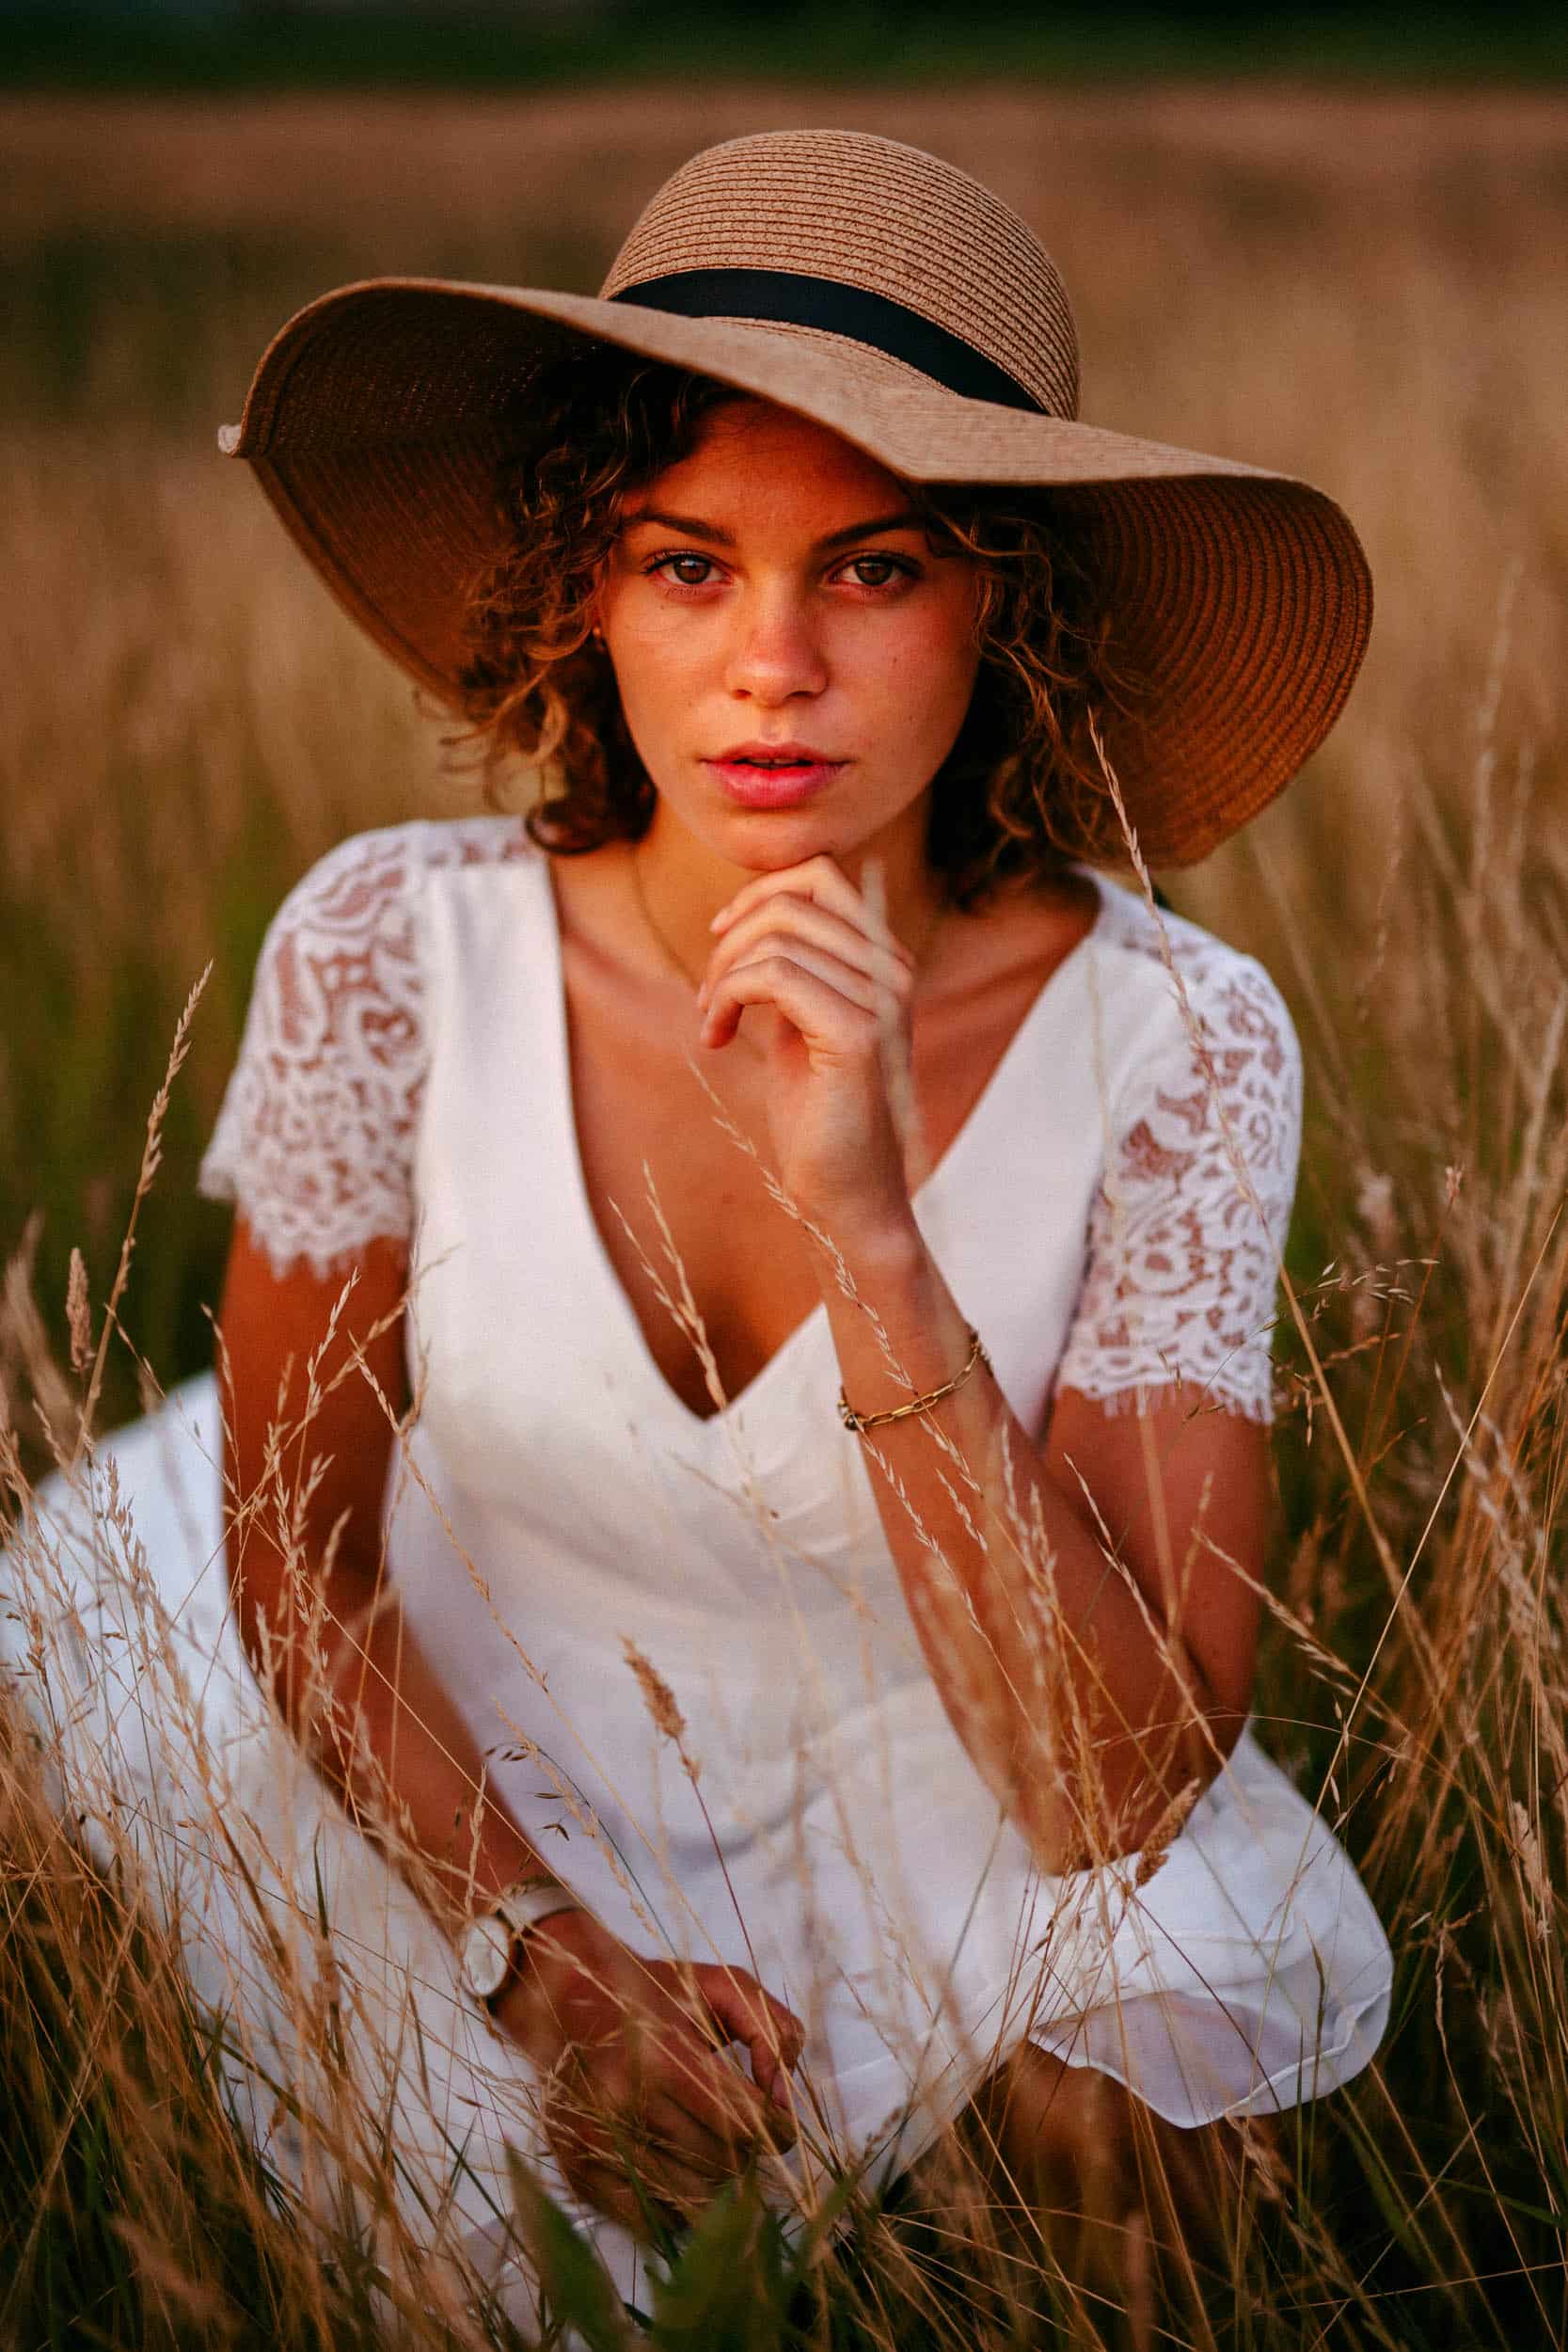 A woman wearing a Bohemian hat, sitting in a field.